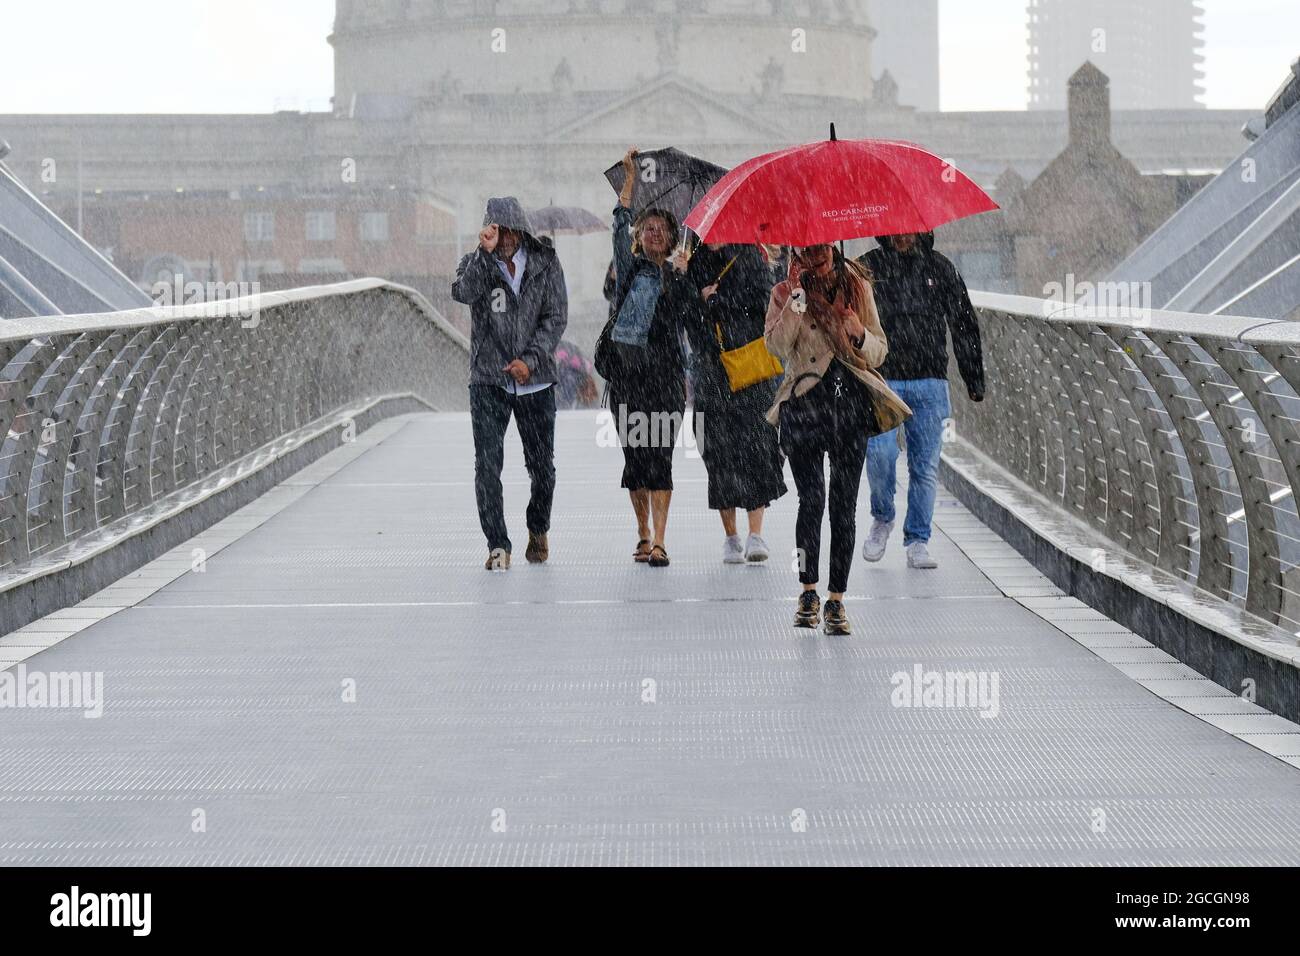 Londres, Reino Unido. La gente atraviesa el Puente del Milenio durante una fuerte lluvia, ya que el tiempo inestable continúa en la capital causando inundaciones repentinas. Foto de stock